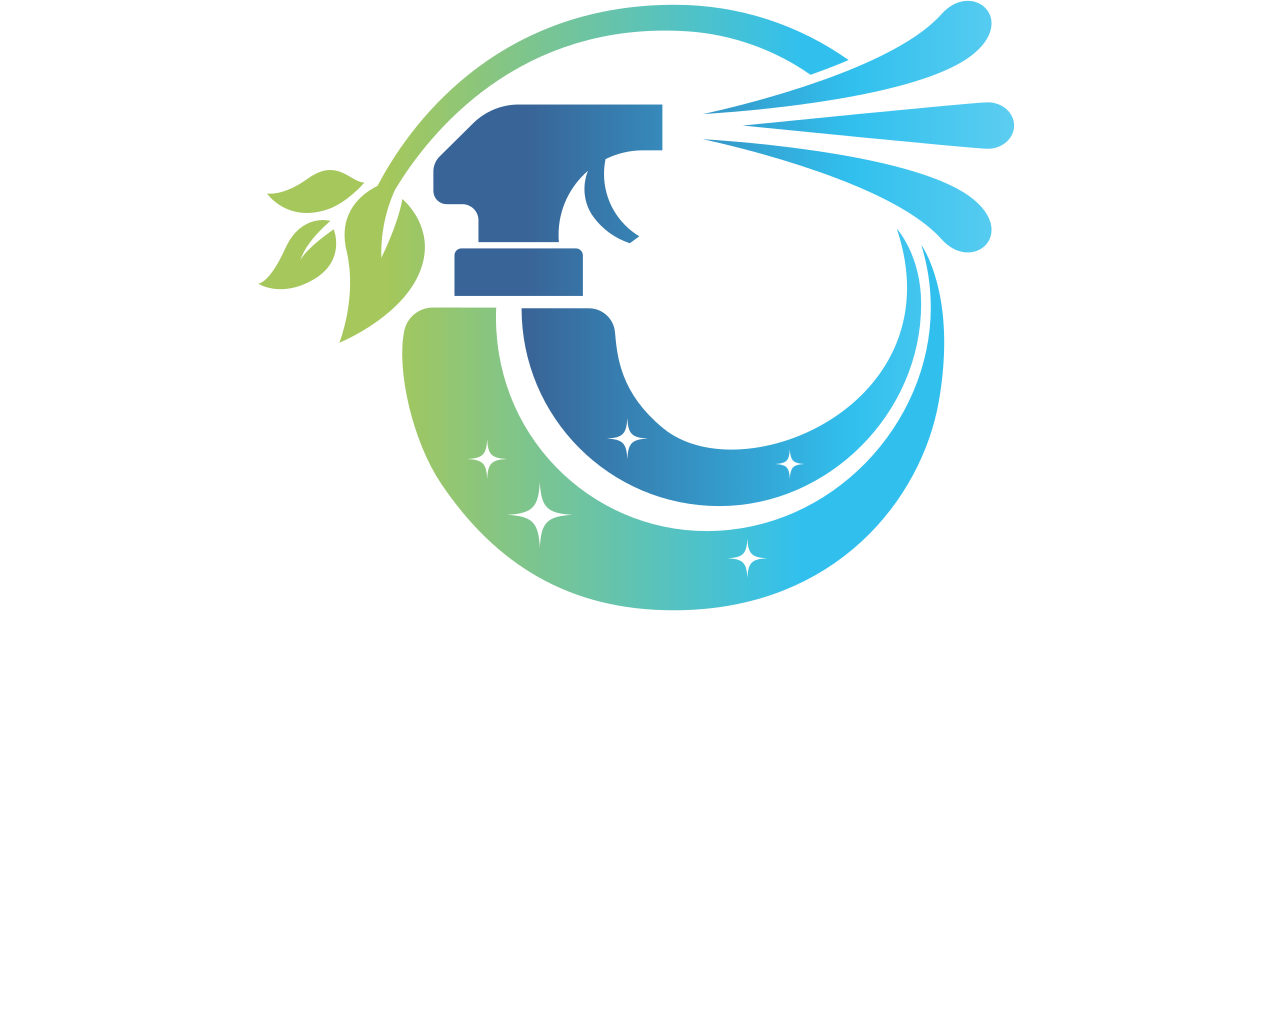 Let it Shine 's web page